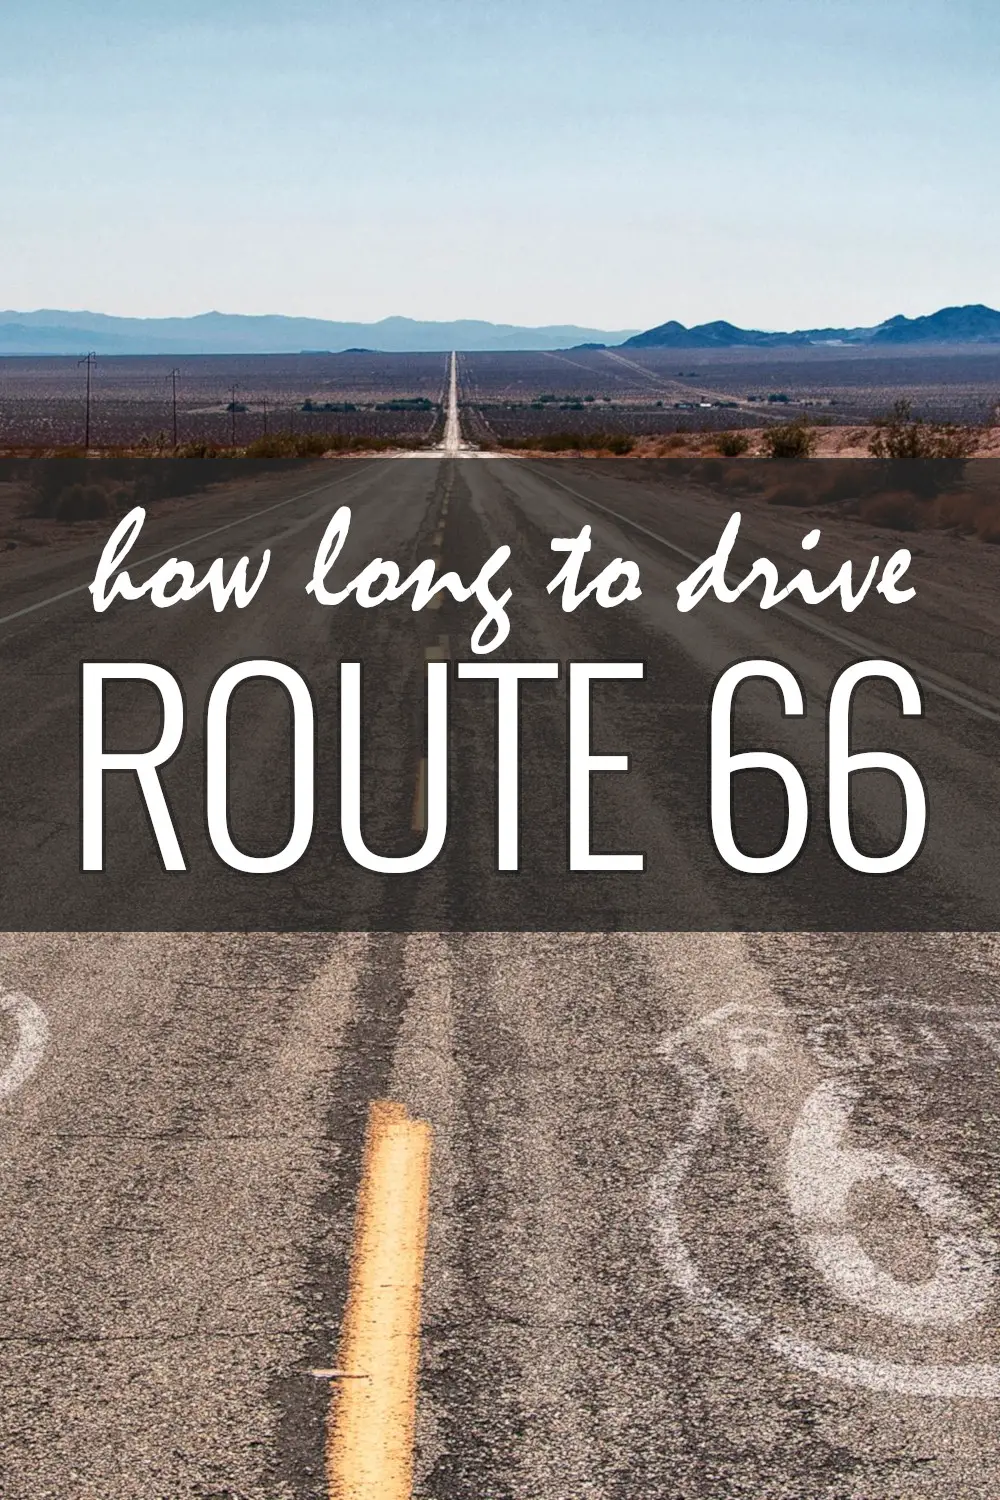 ¿Cuánto se tarda en conducir por la ruta 66 de Chicago a Santa Mónica?